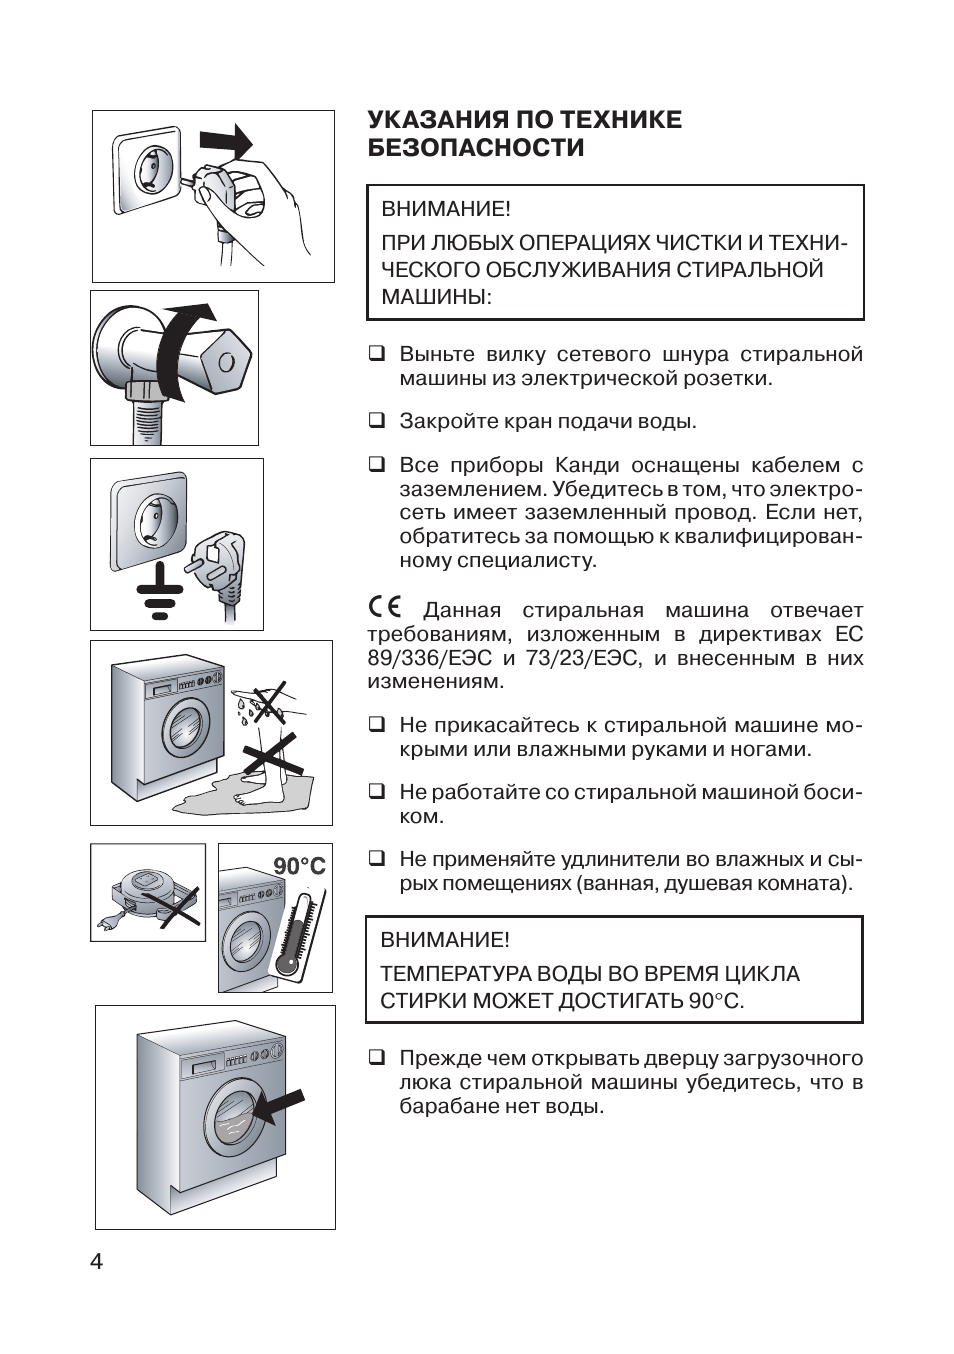 Как ухаживать за стиральной машиной-автомат